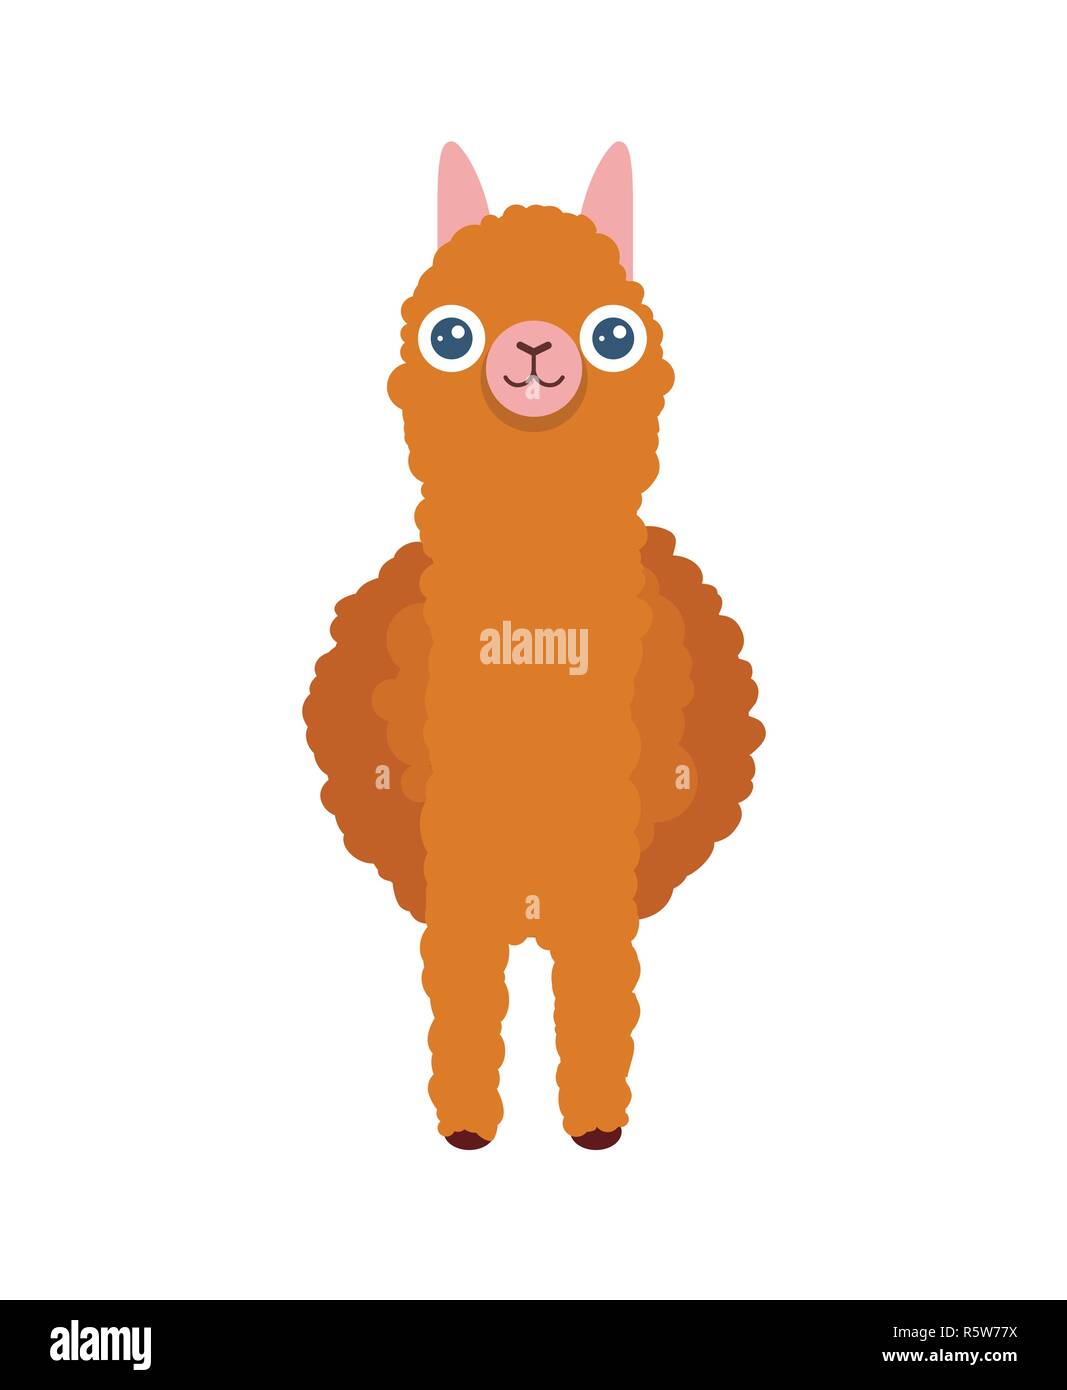 Carino south american Alpaca davanti - cartoon vettore illustrazione della lama per poster e greating cards. Illustrazione Vettoriale